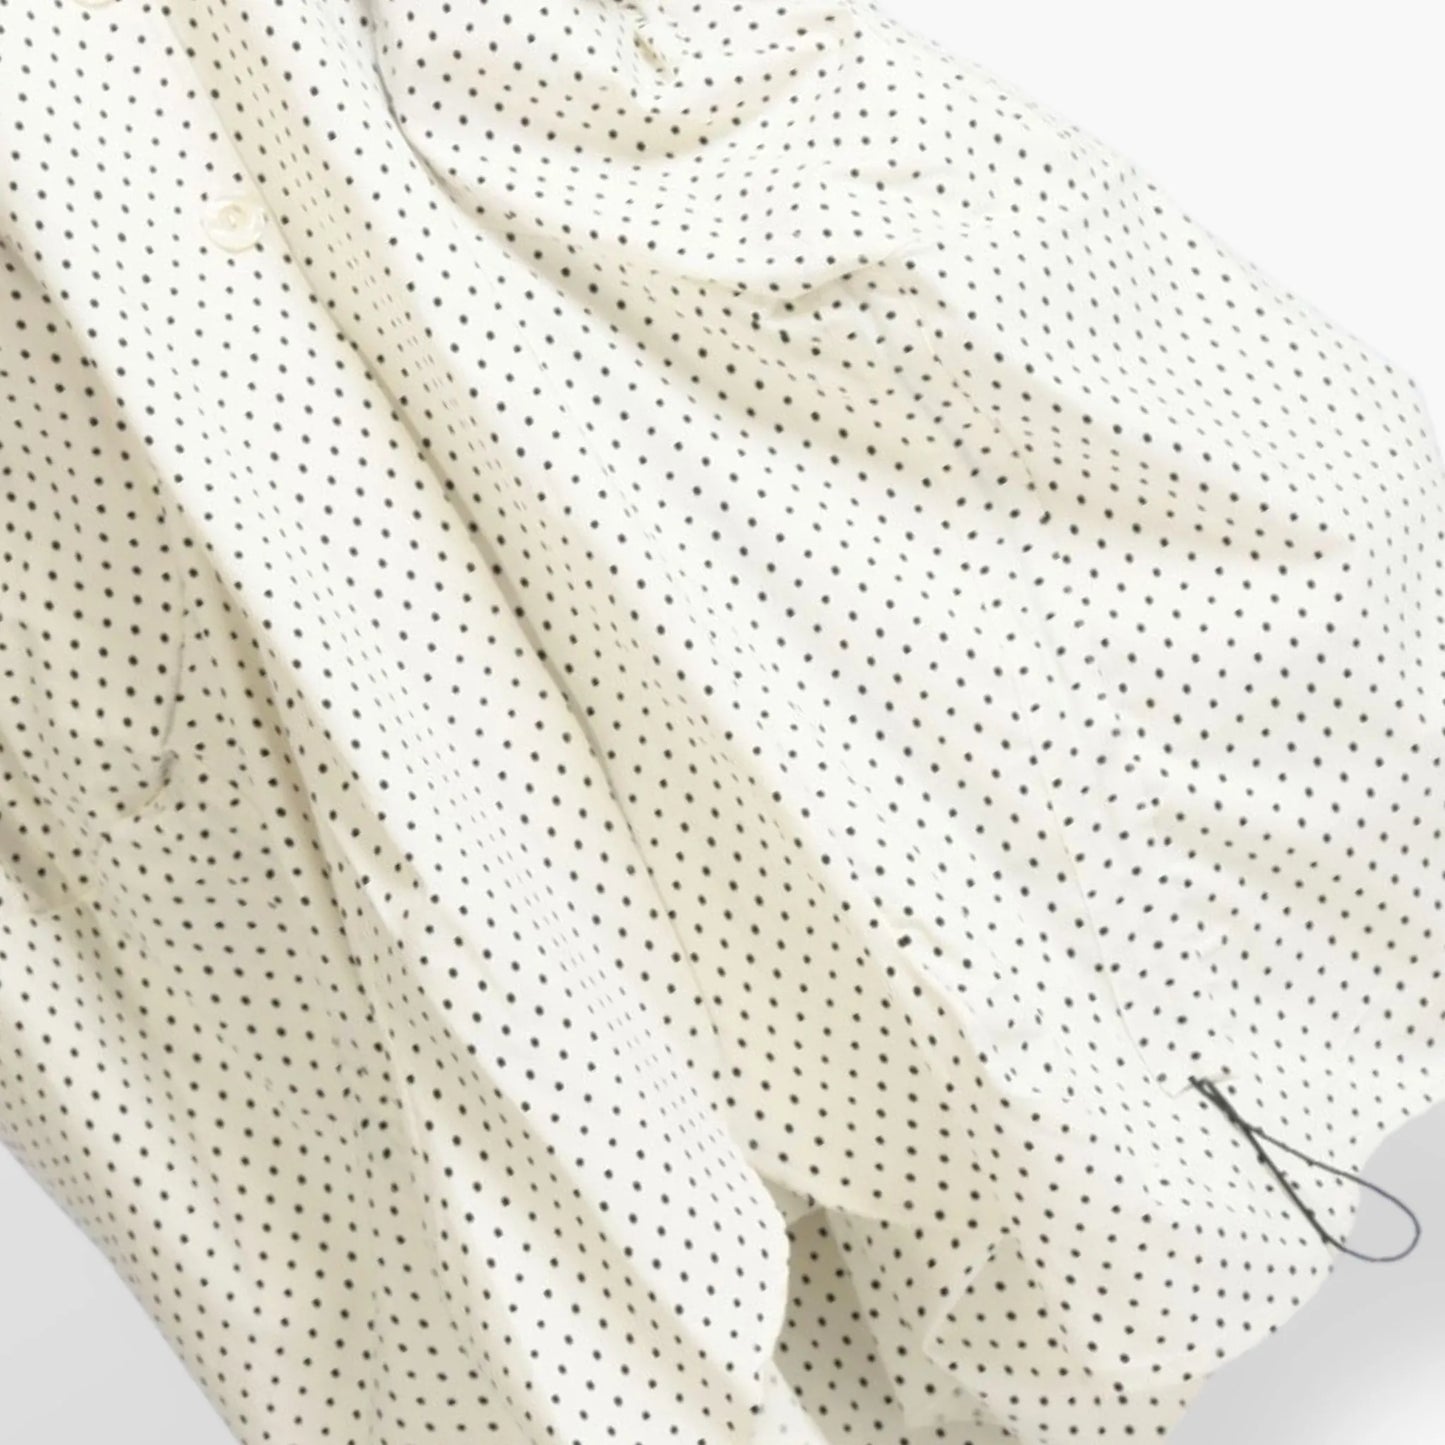 Sommer Mantel in Gerafft Form aus stretcher Bengaline Qualität, Gemma in Weiß-Schwarz